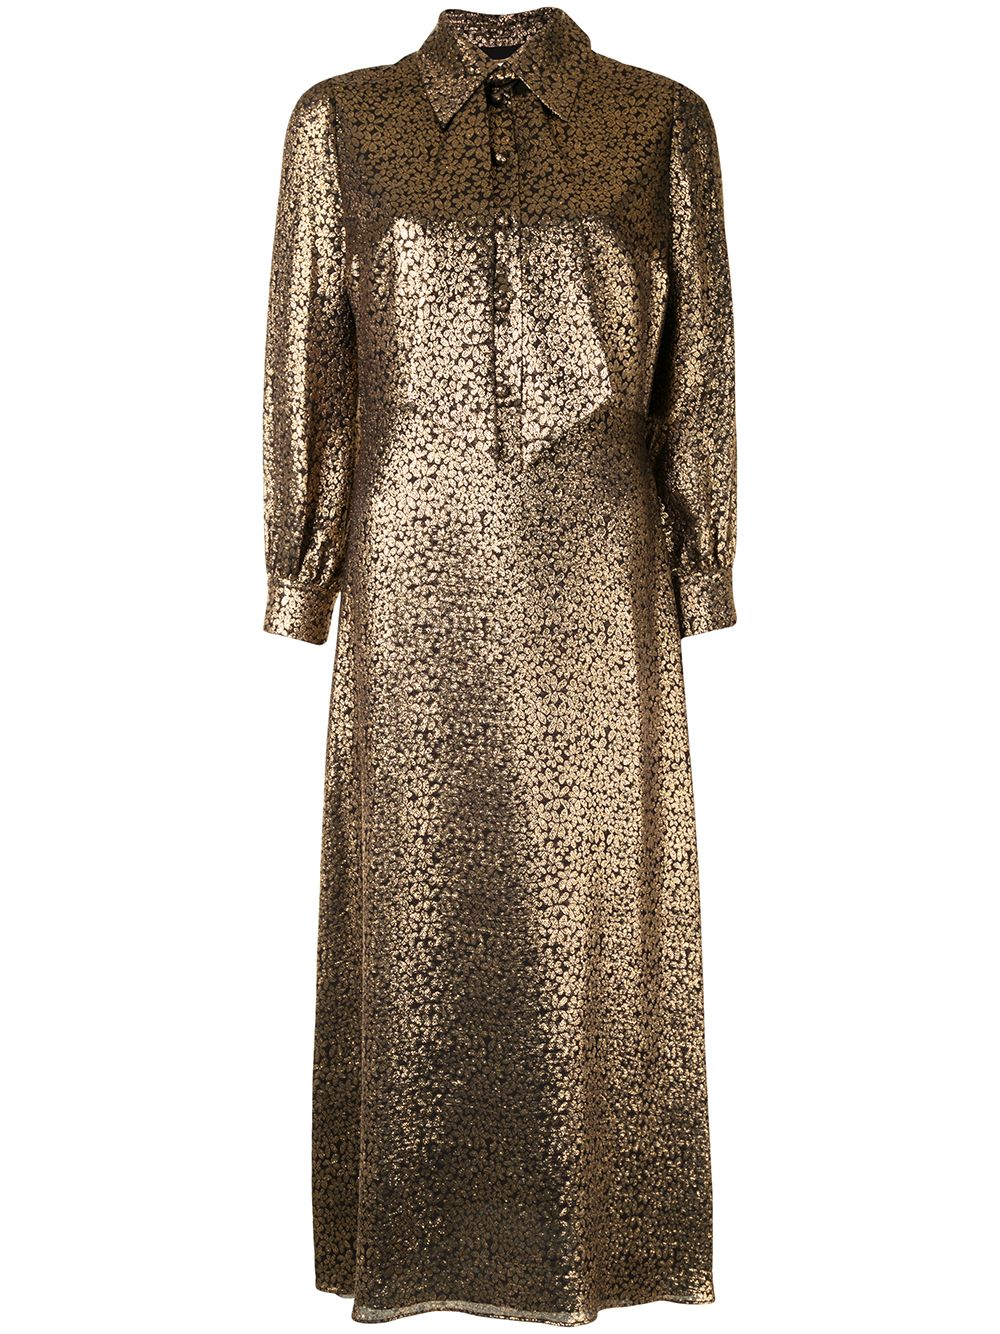 фото Yves saint laurent pre-owned жаккардовое платье с эффектом металлик